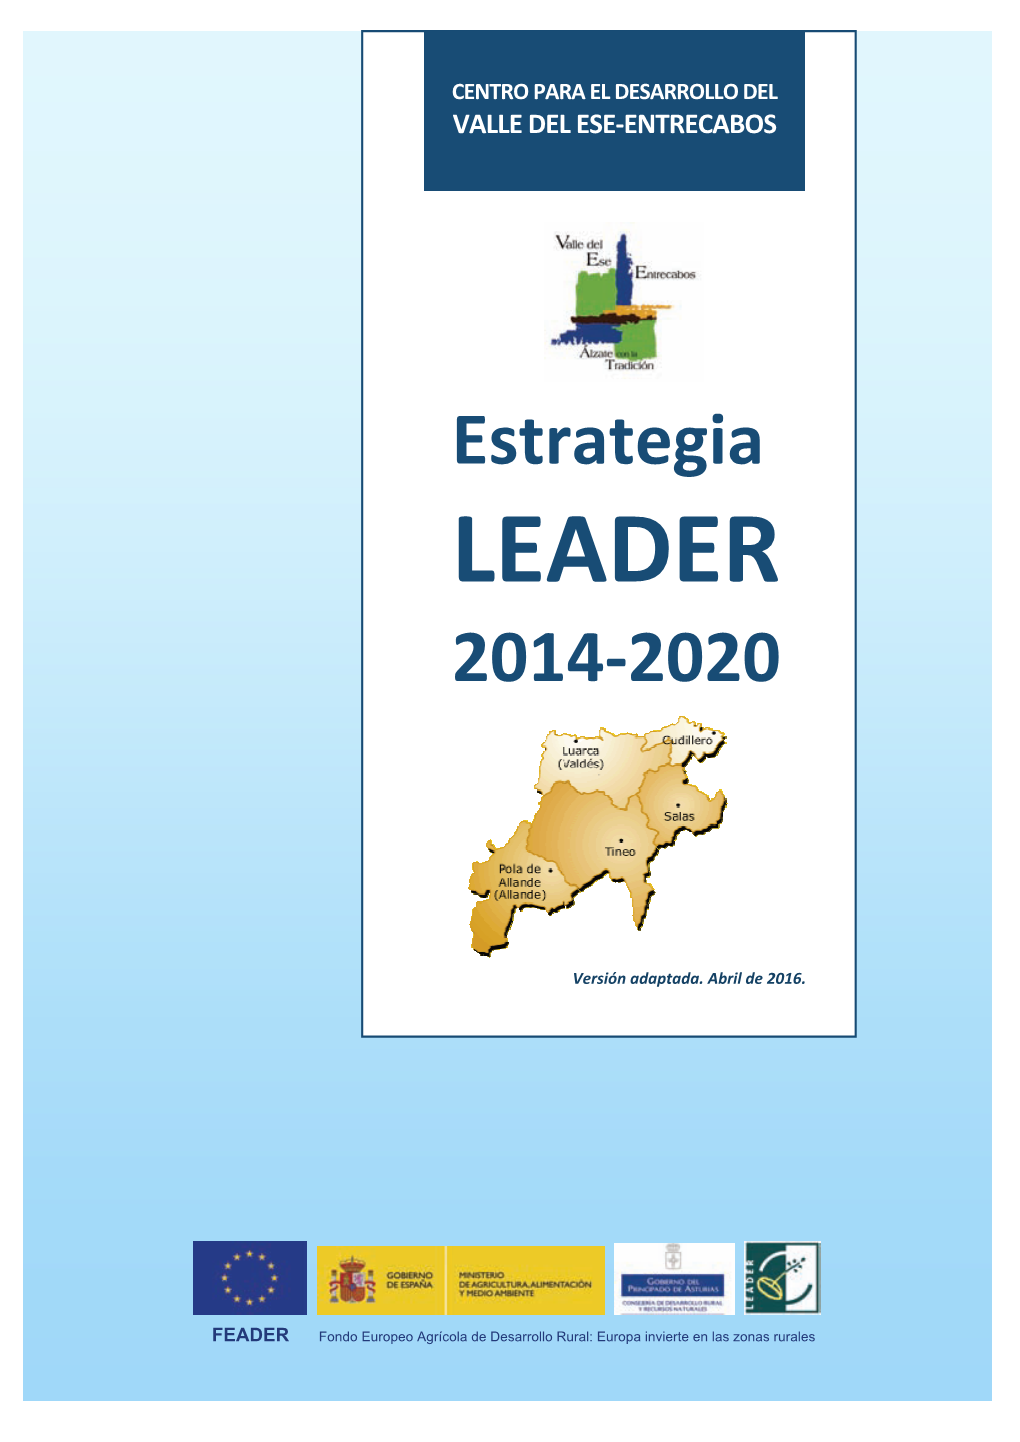 Estrategia LEADER 2014-2020